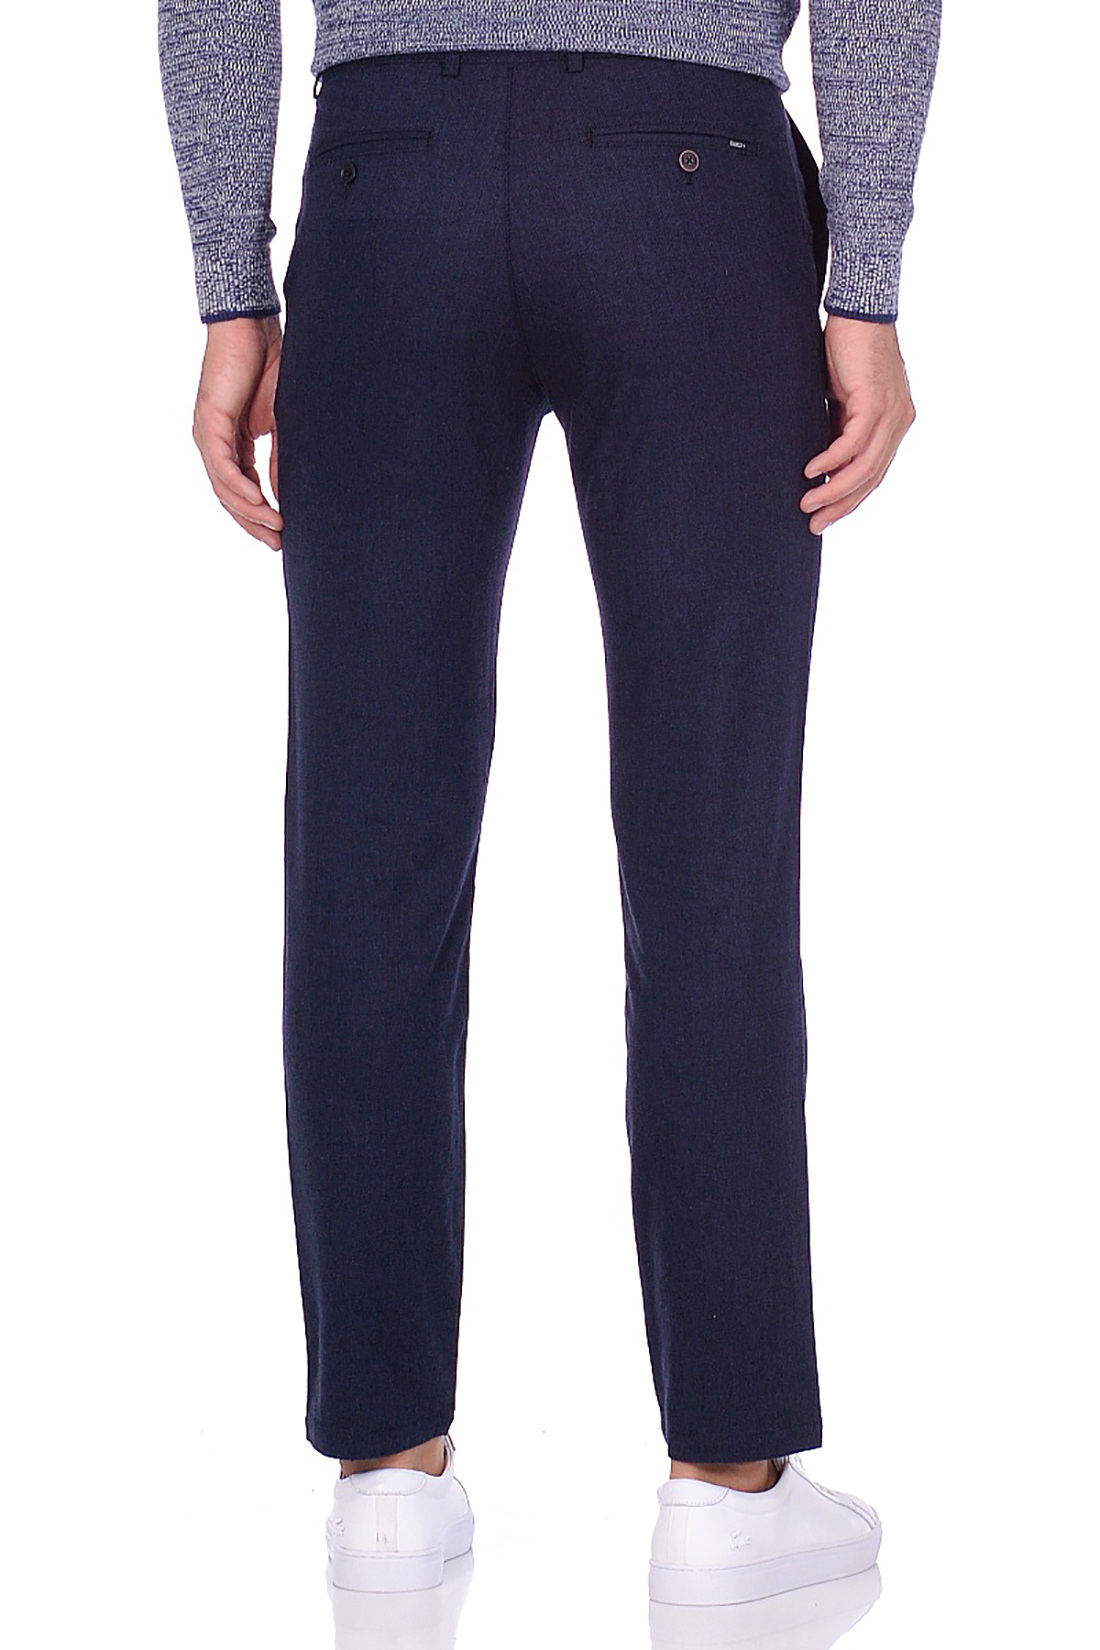 Классические брюки из меланжевого материала (арт. baon B799508), размер XL, цвет синий Классические брюки из меланжевого материала (арт. baon B799508) - фото 3